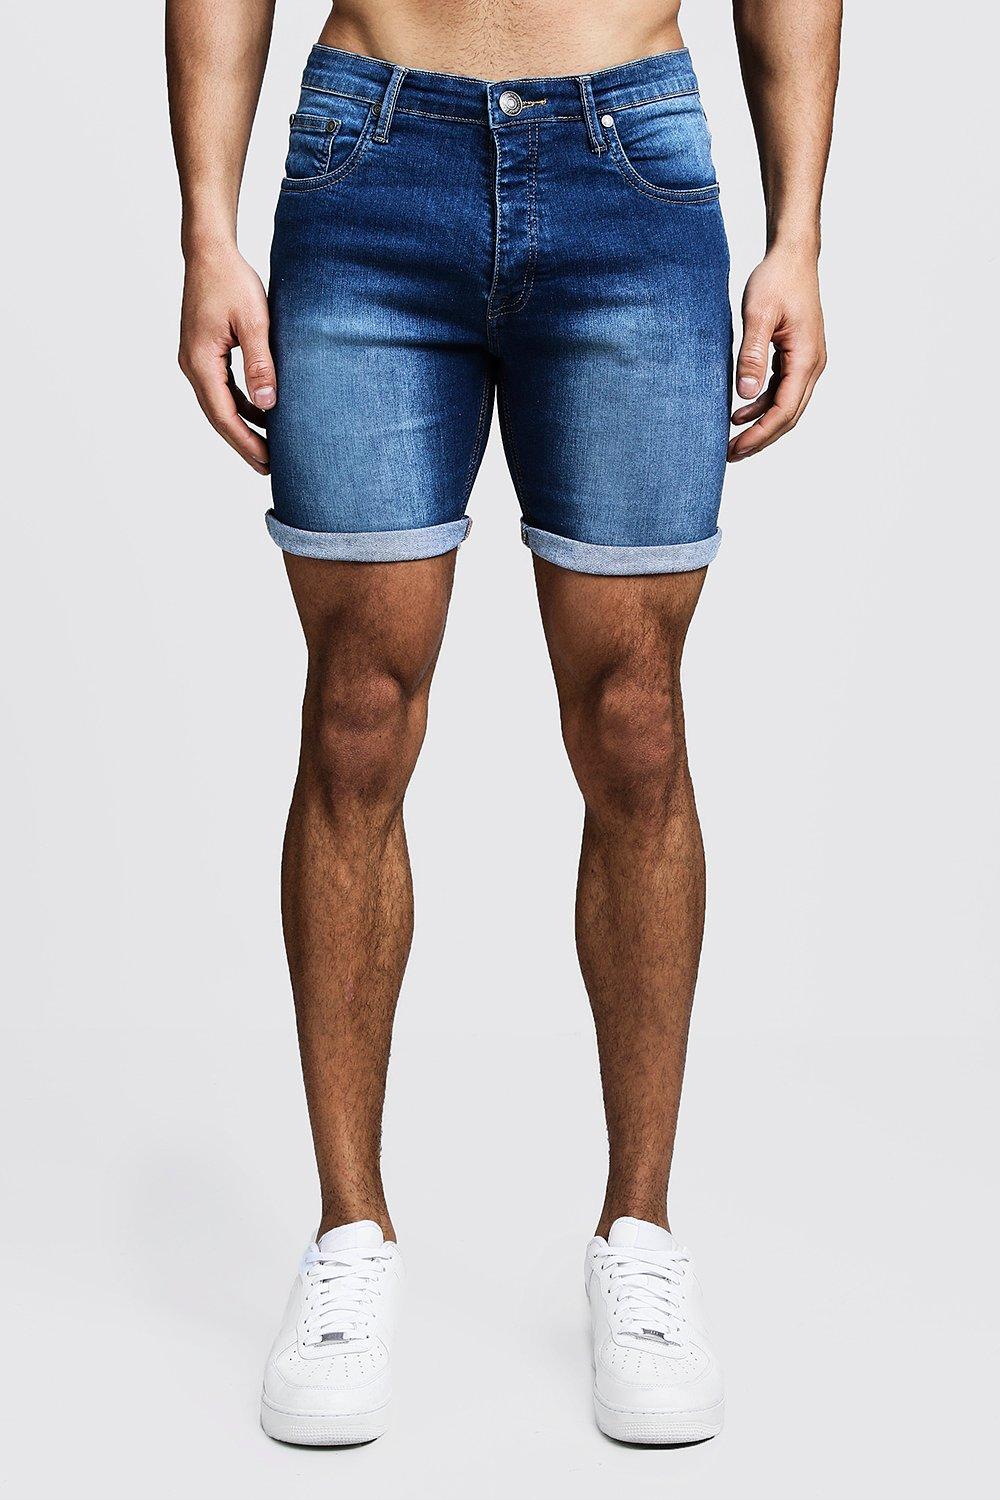 mens jeans shorts sale